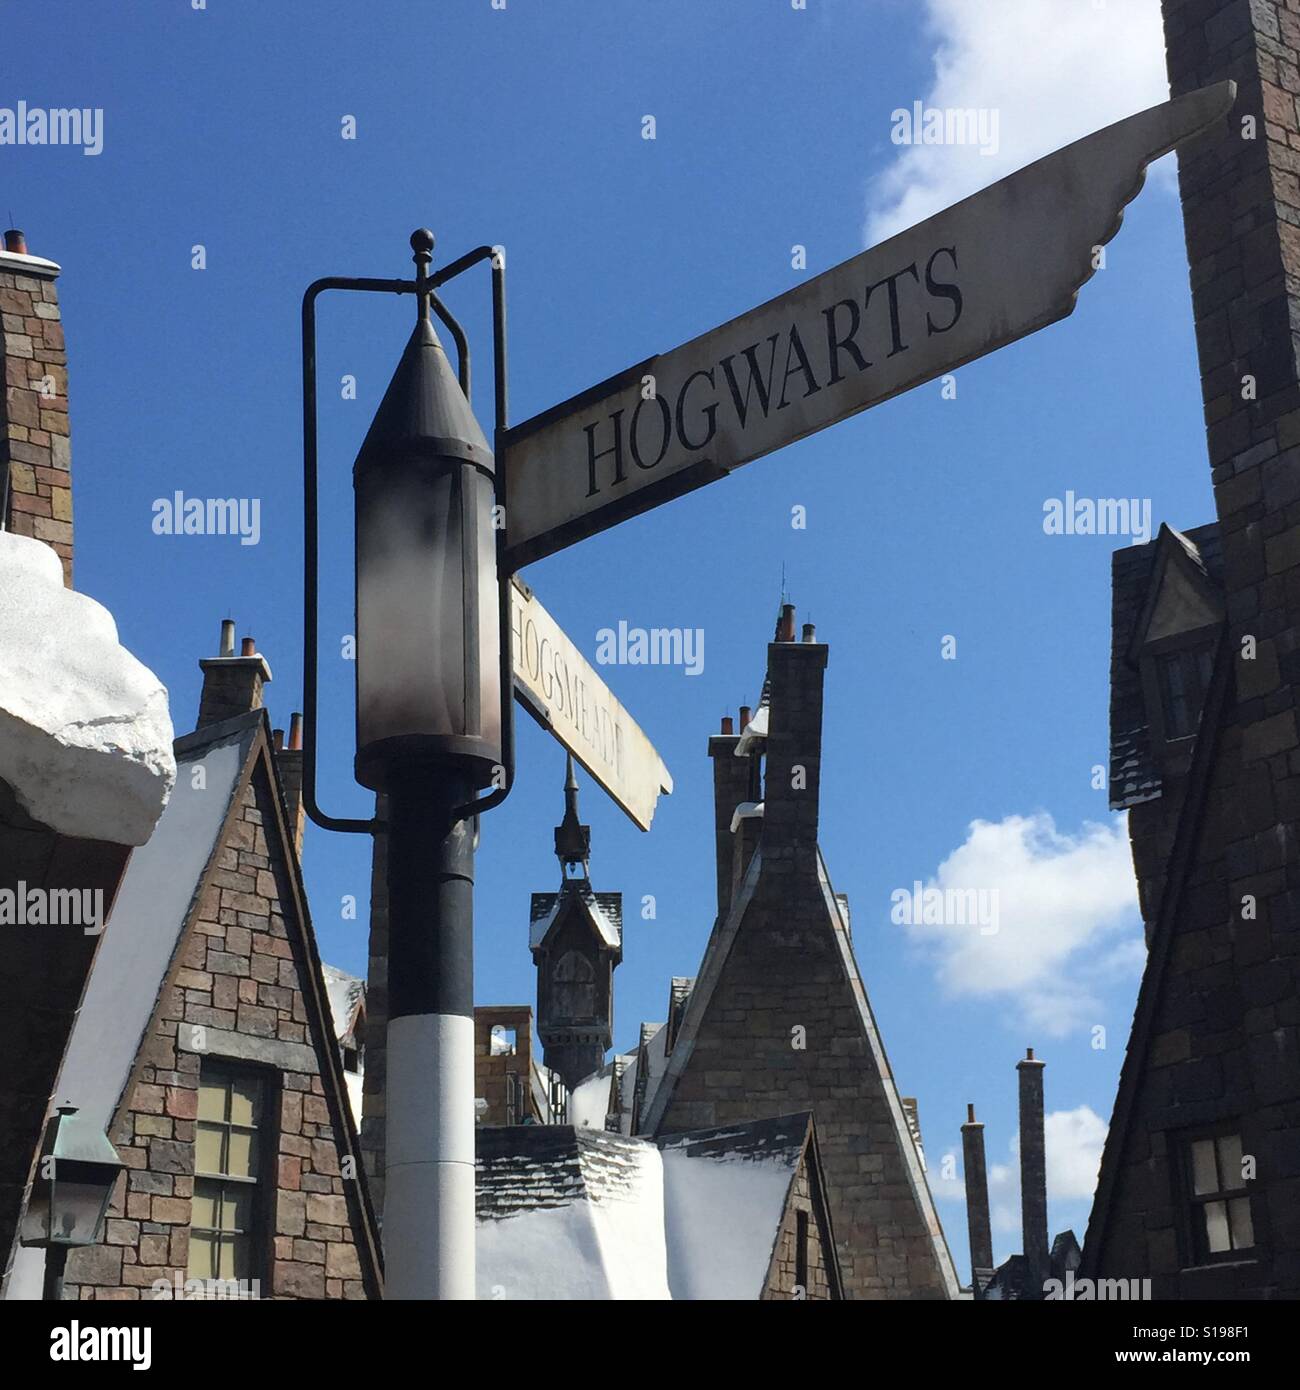 La scuola di Hogwarts strada segno Foto Stock